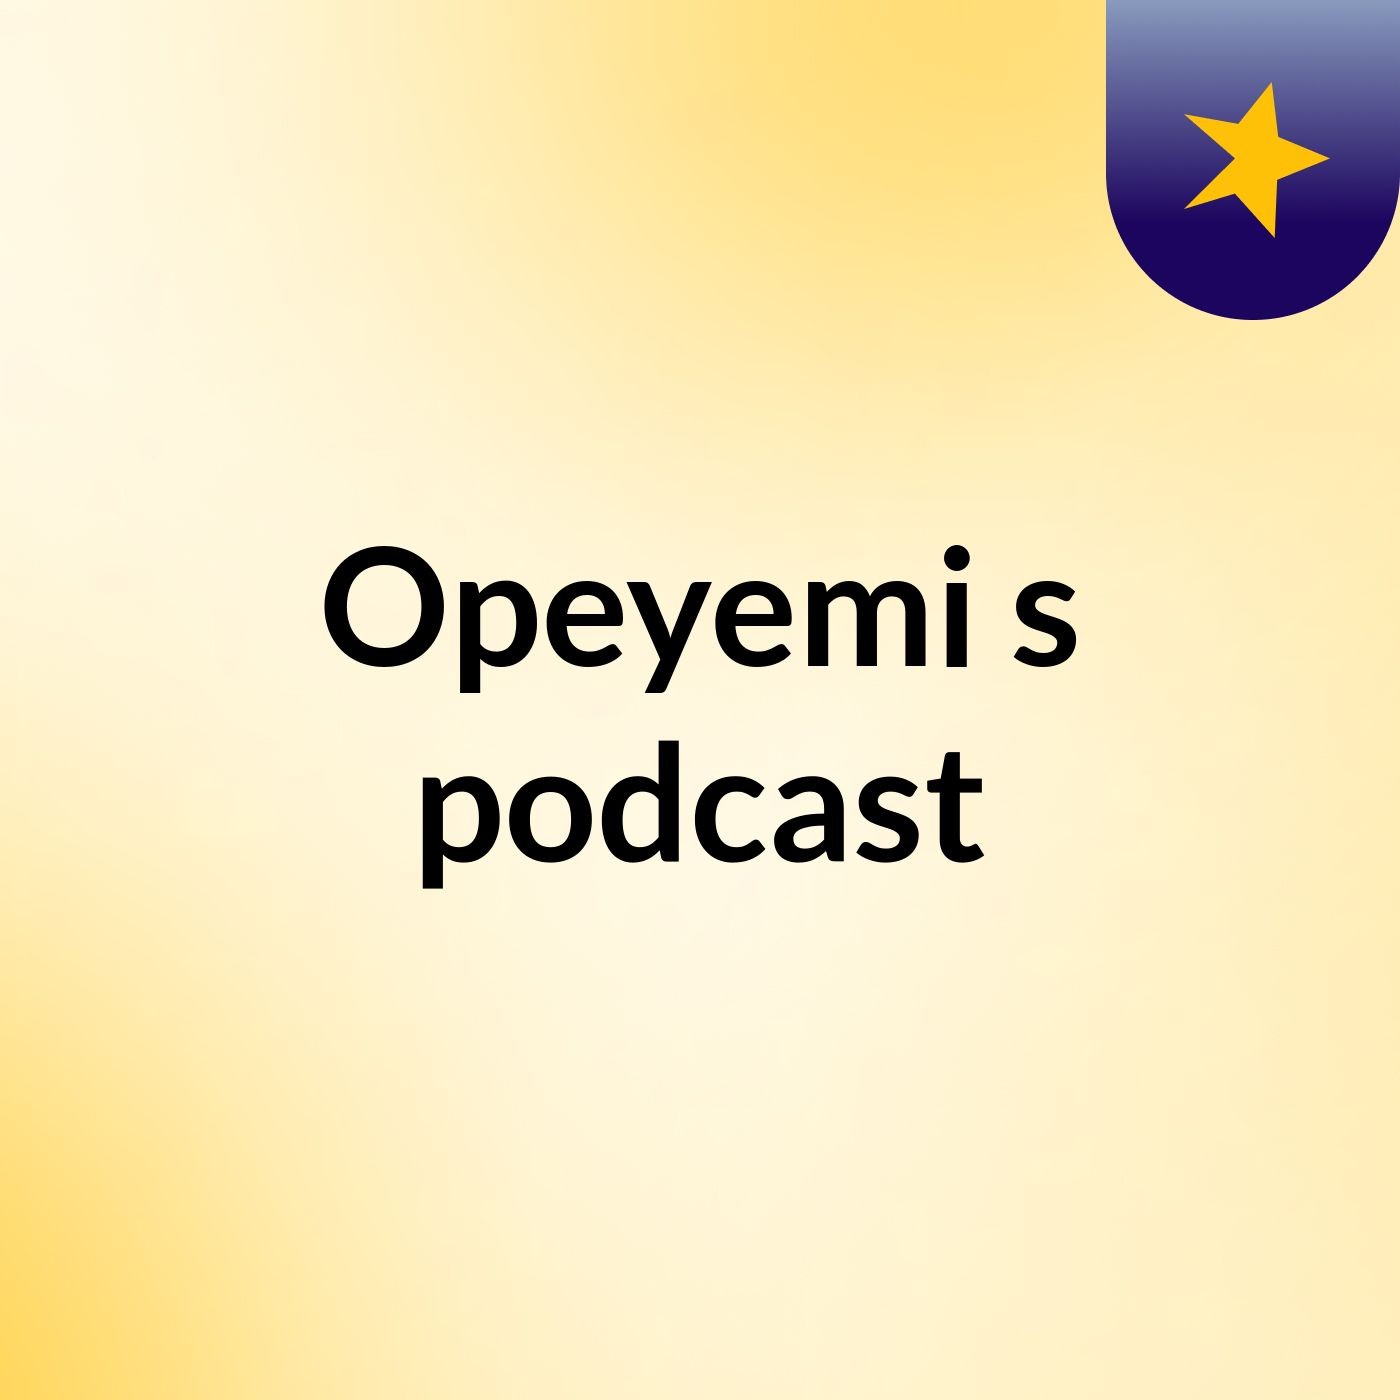 Opeyemi's podcast